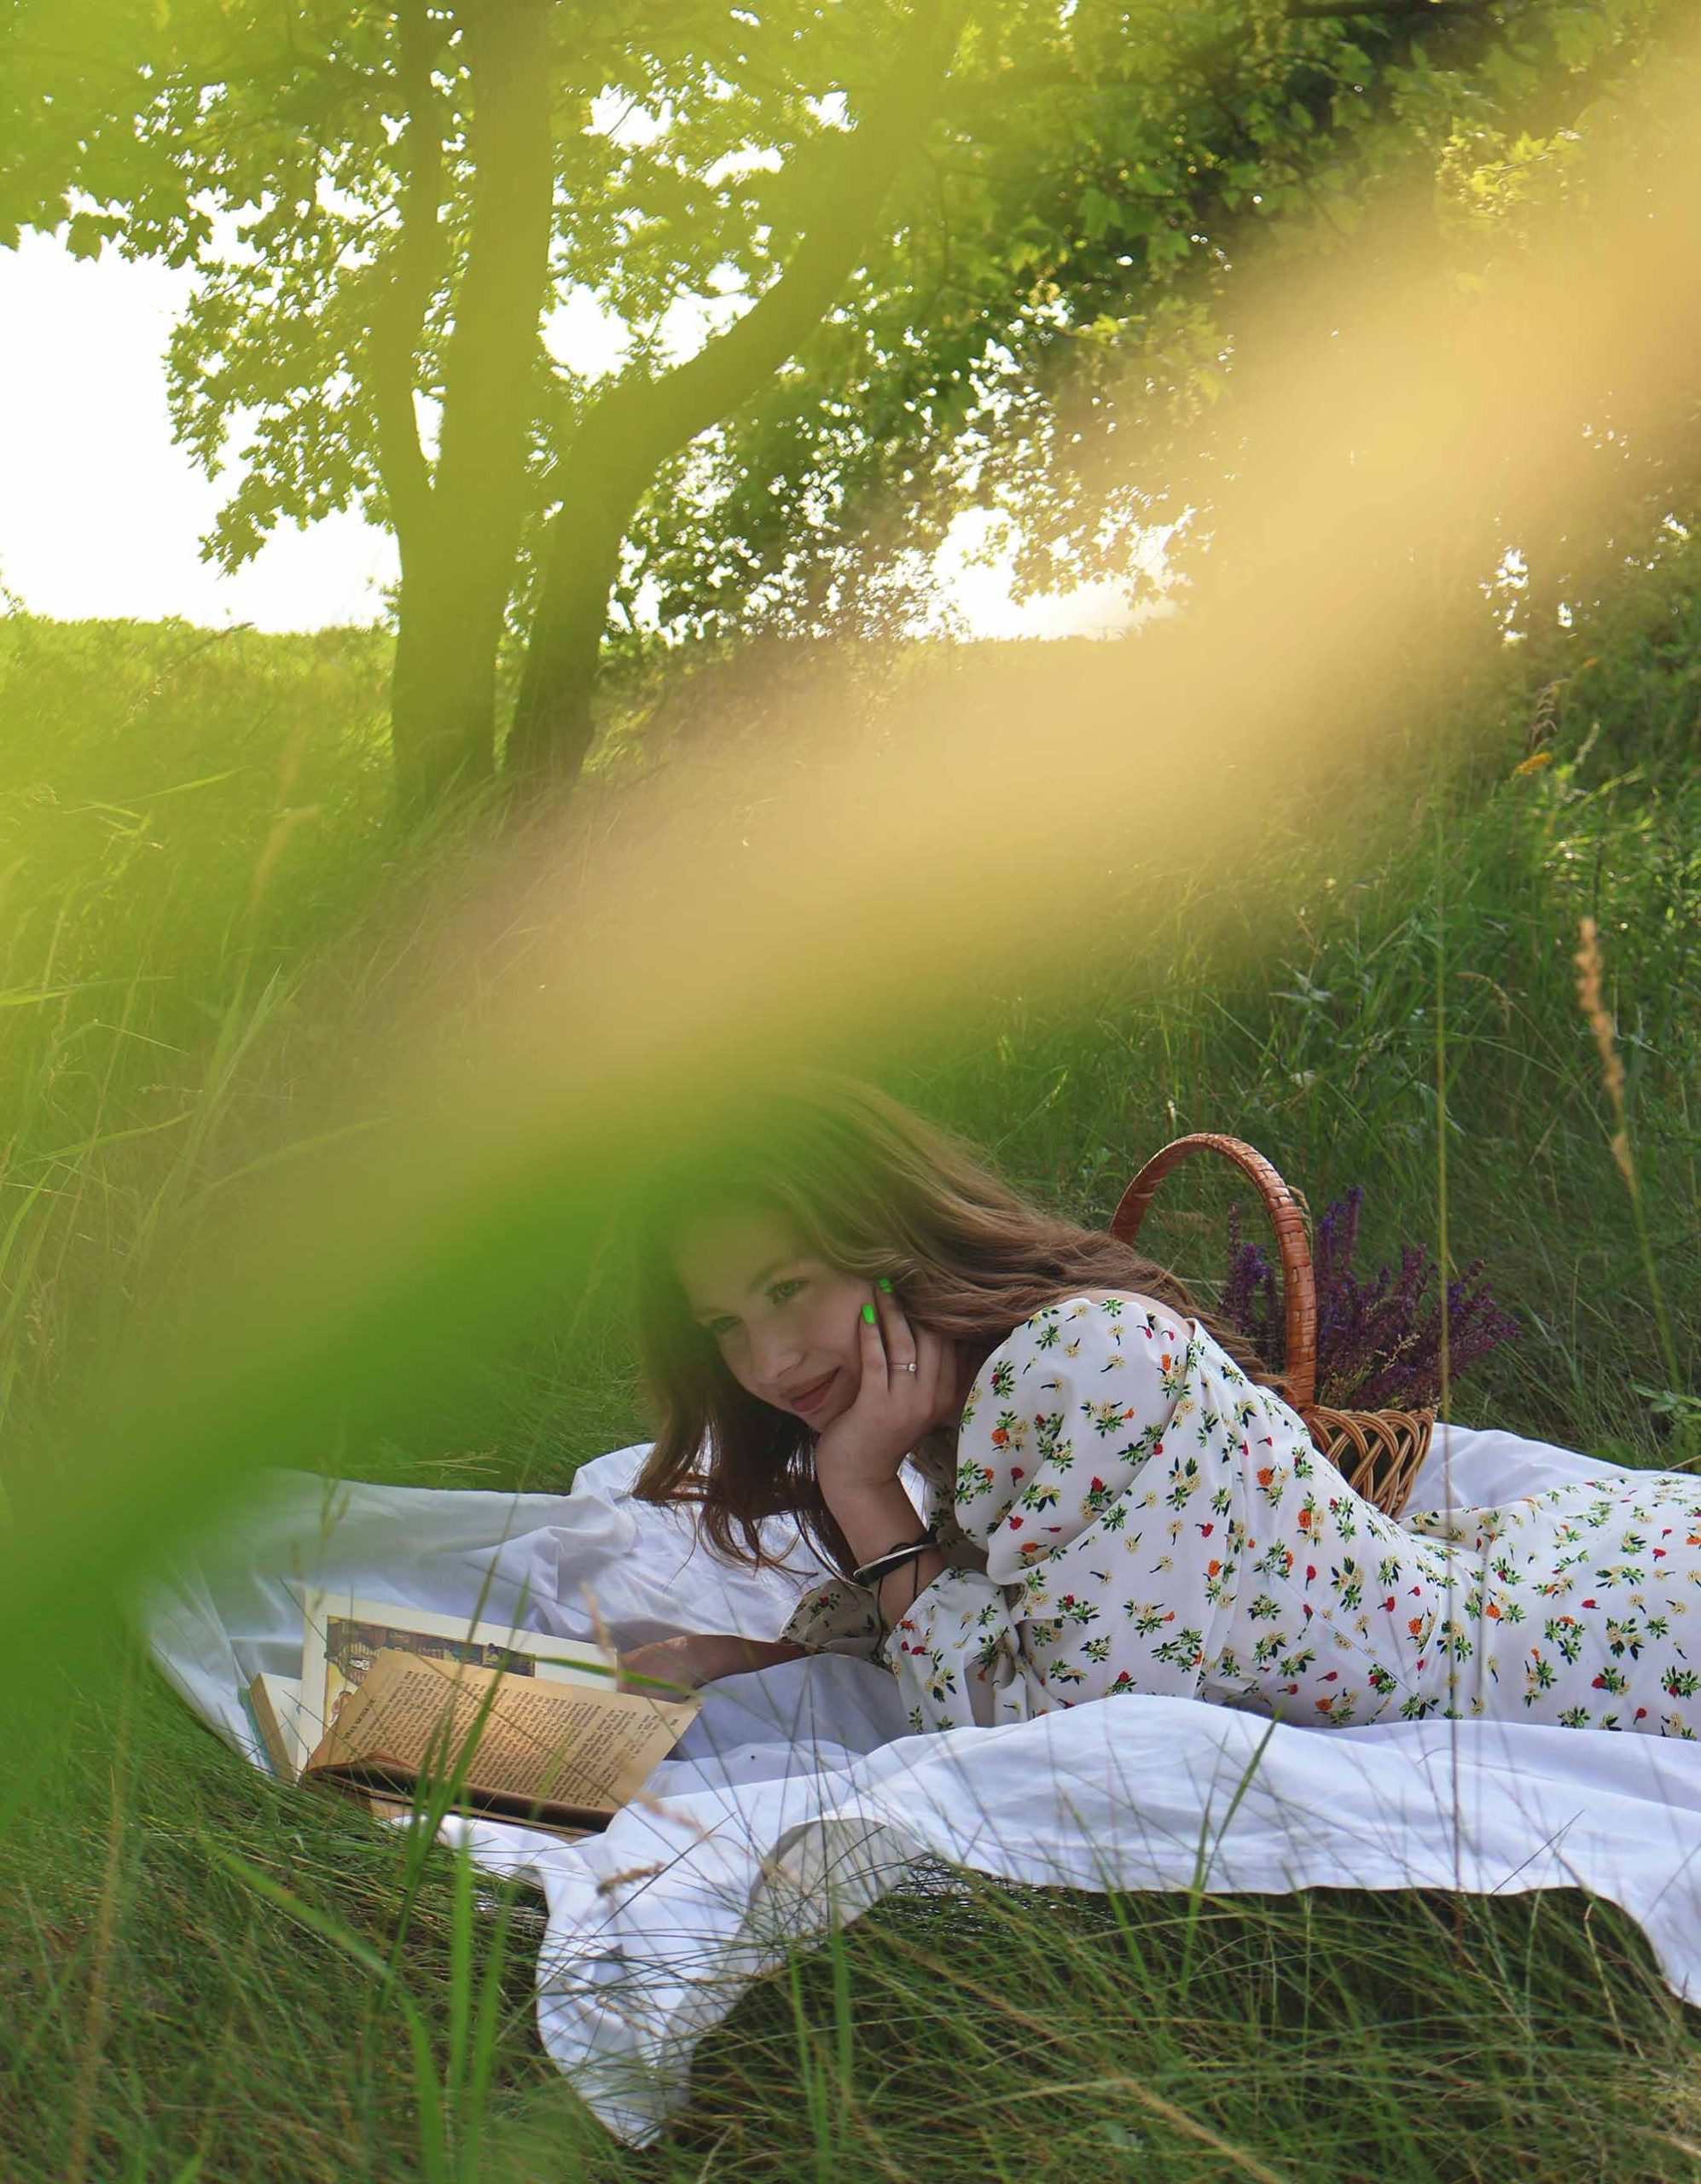 cô gái nằm đọc sách trên bãi cỏ một cách hạnh phúc